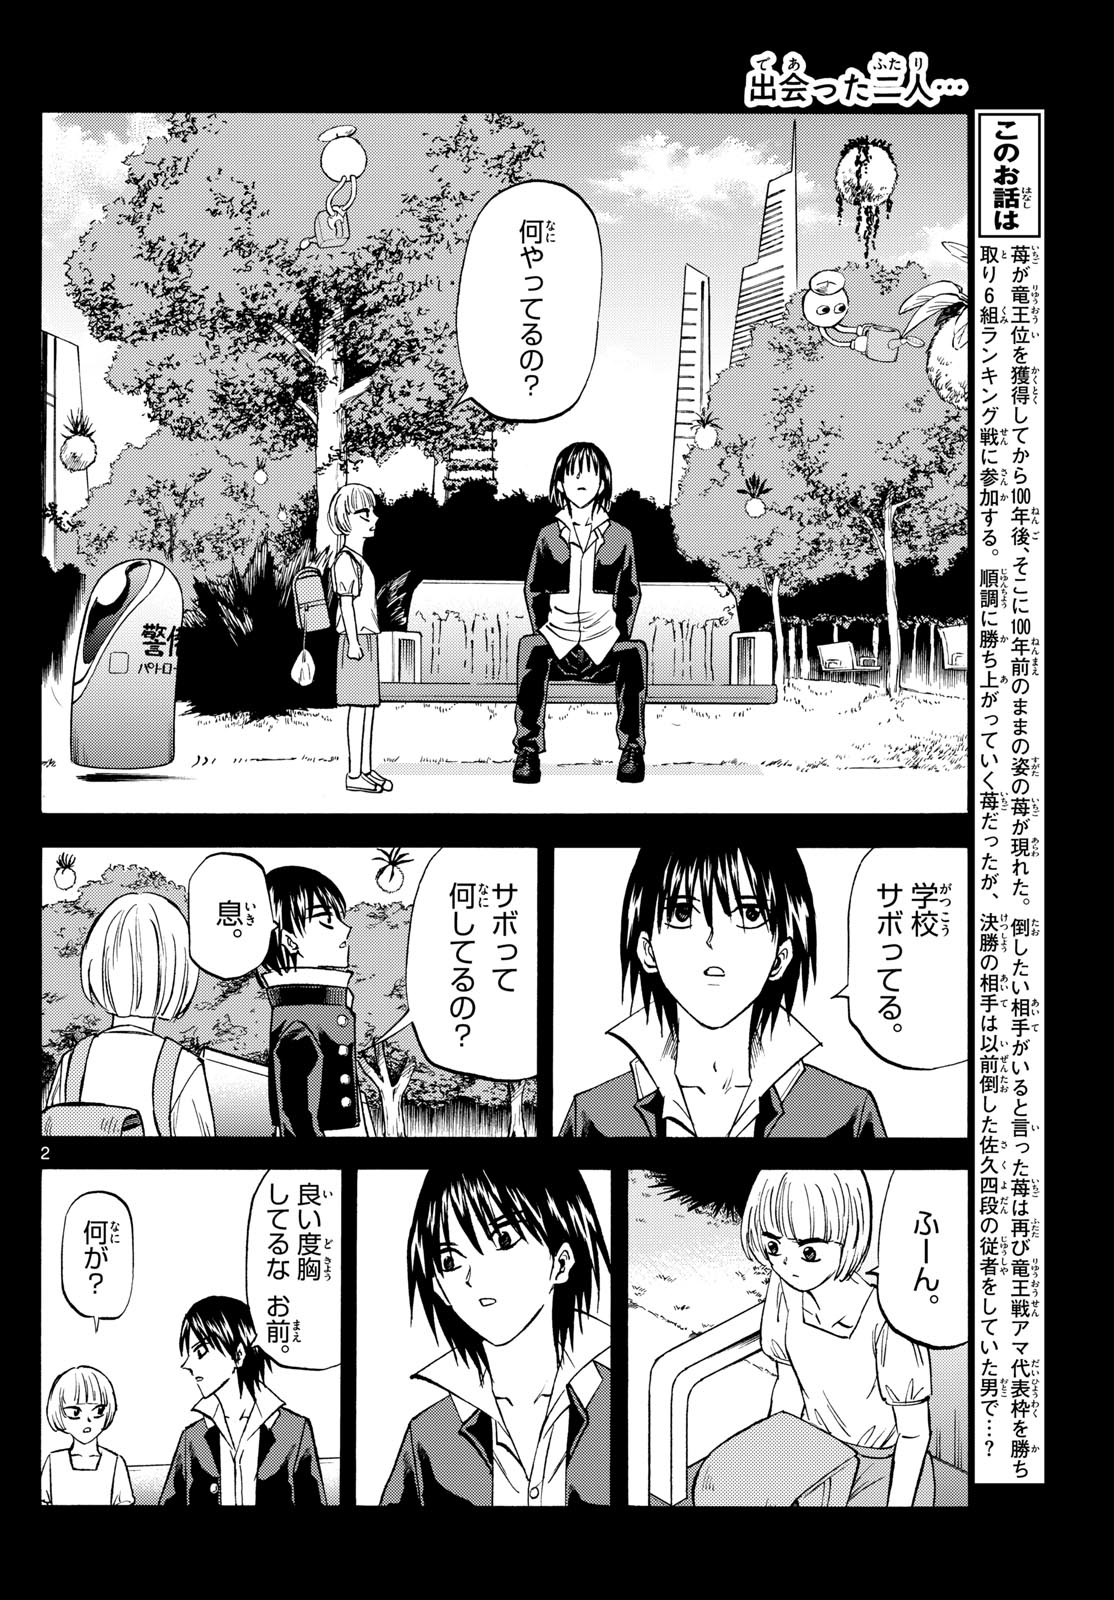 Tatsu to Ichigo - Chapter 193 - Page 2